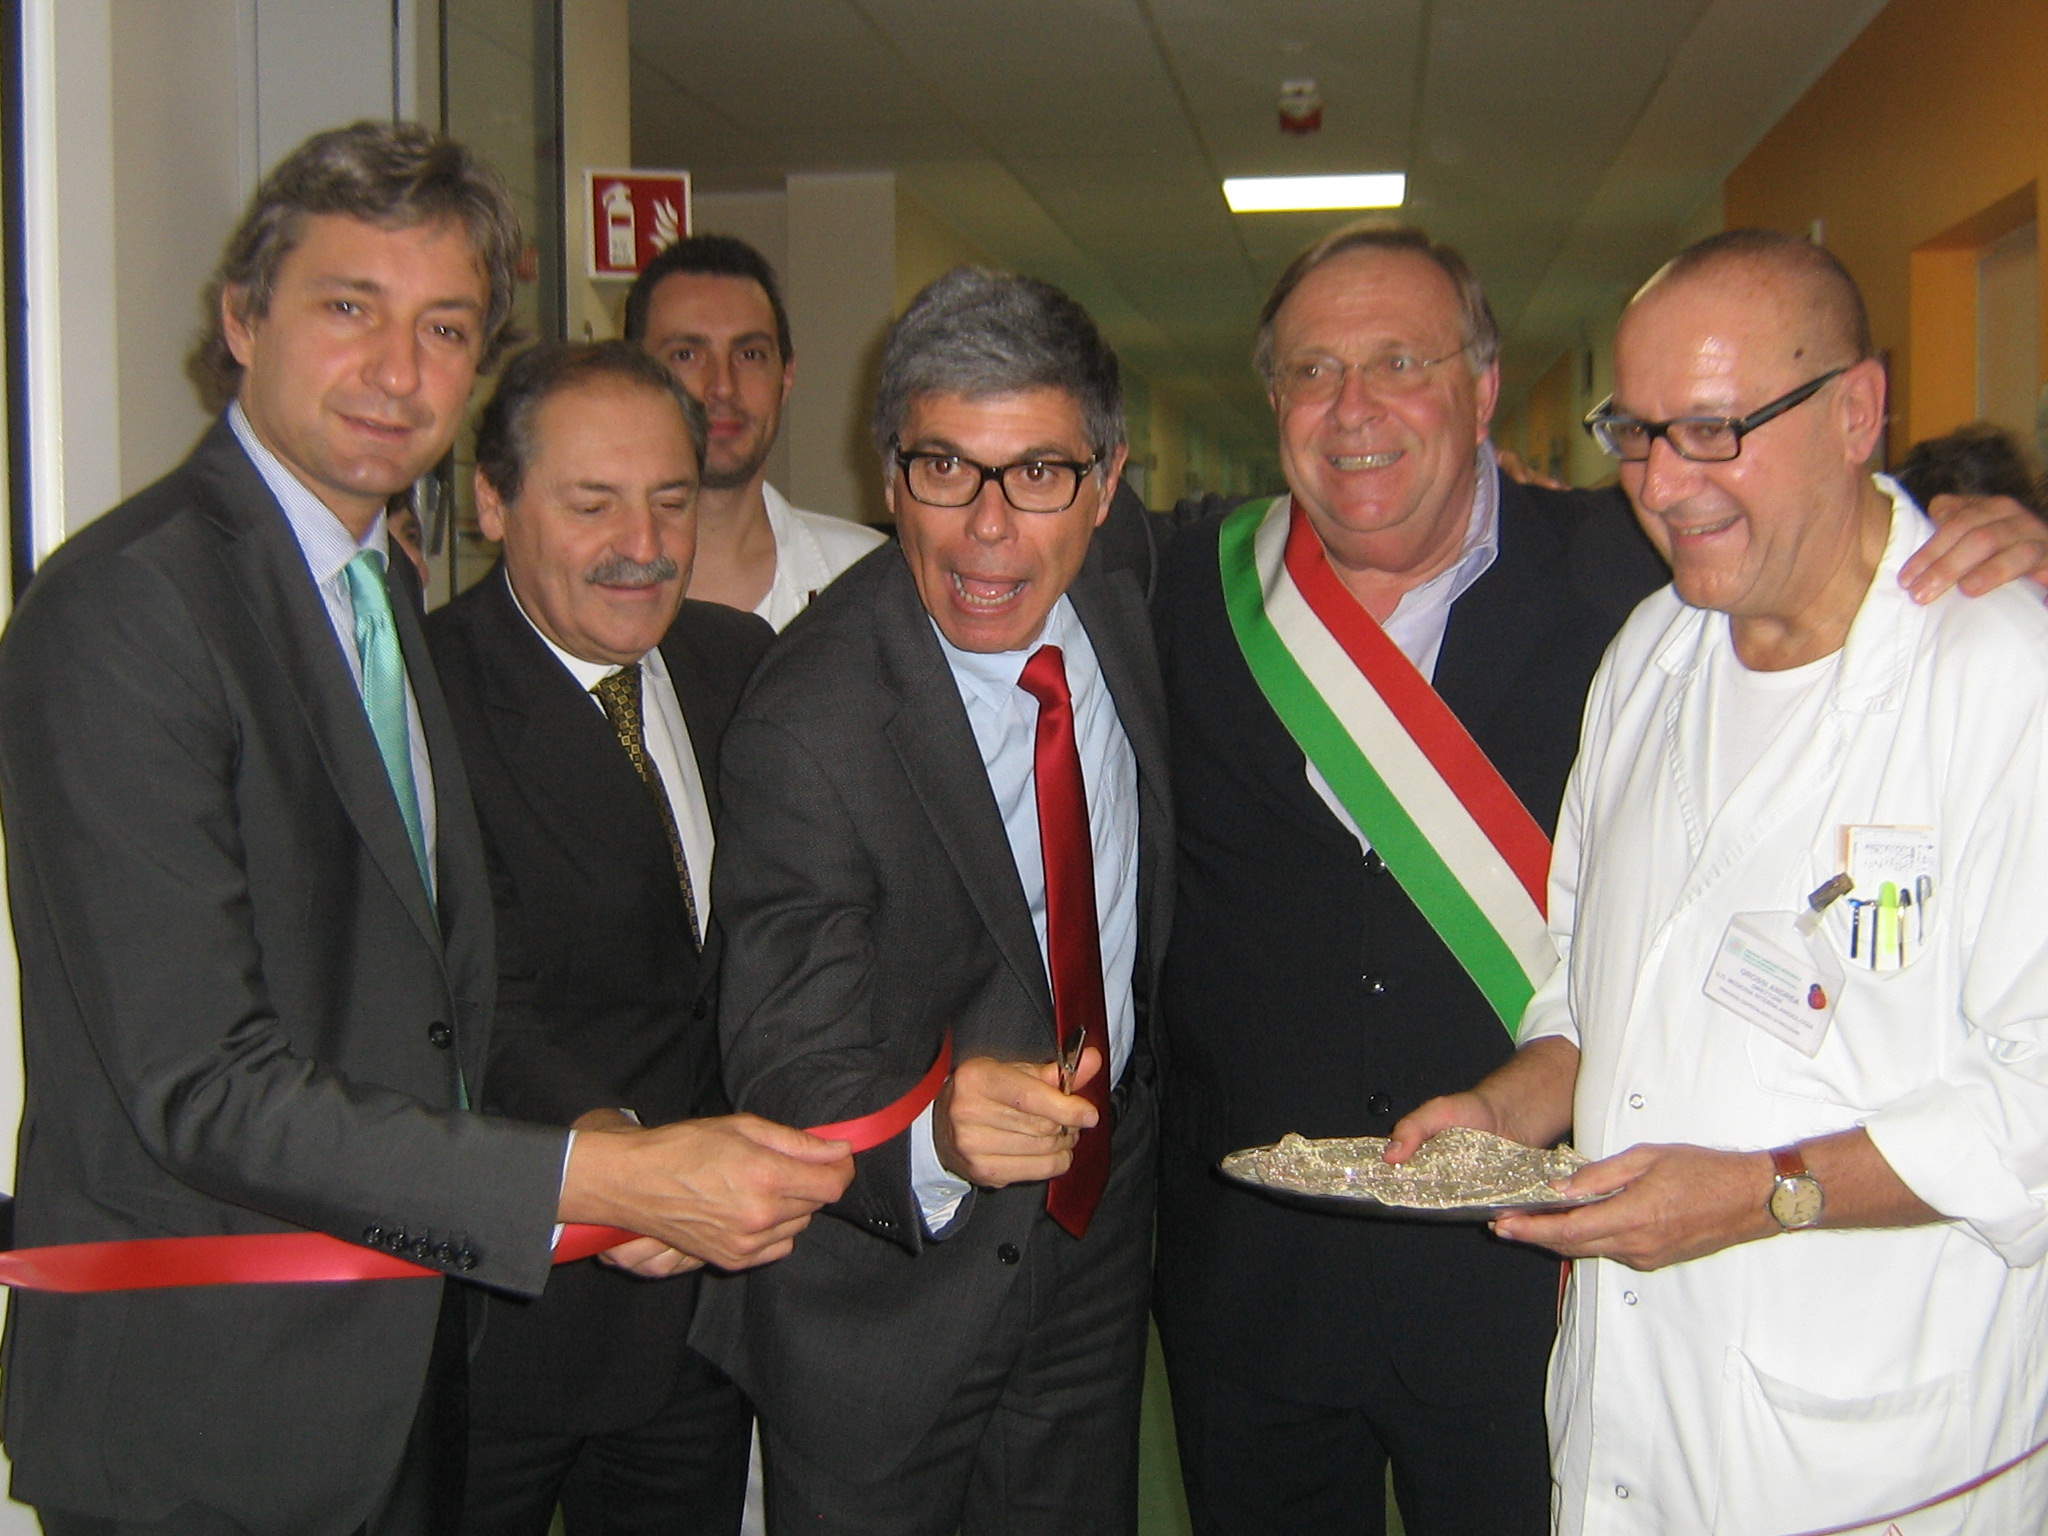 Nuove apparecchiature diagnostiche donate all'Ospedale "Infermi" di Rimini